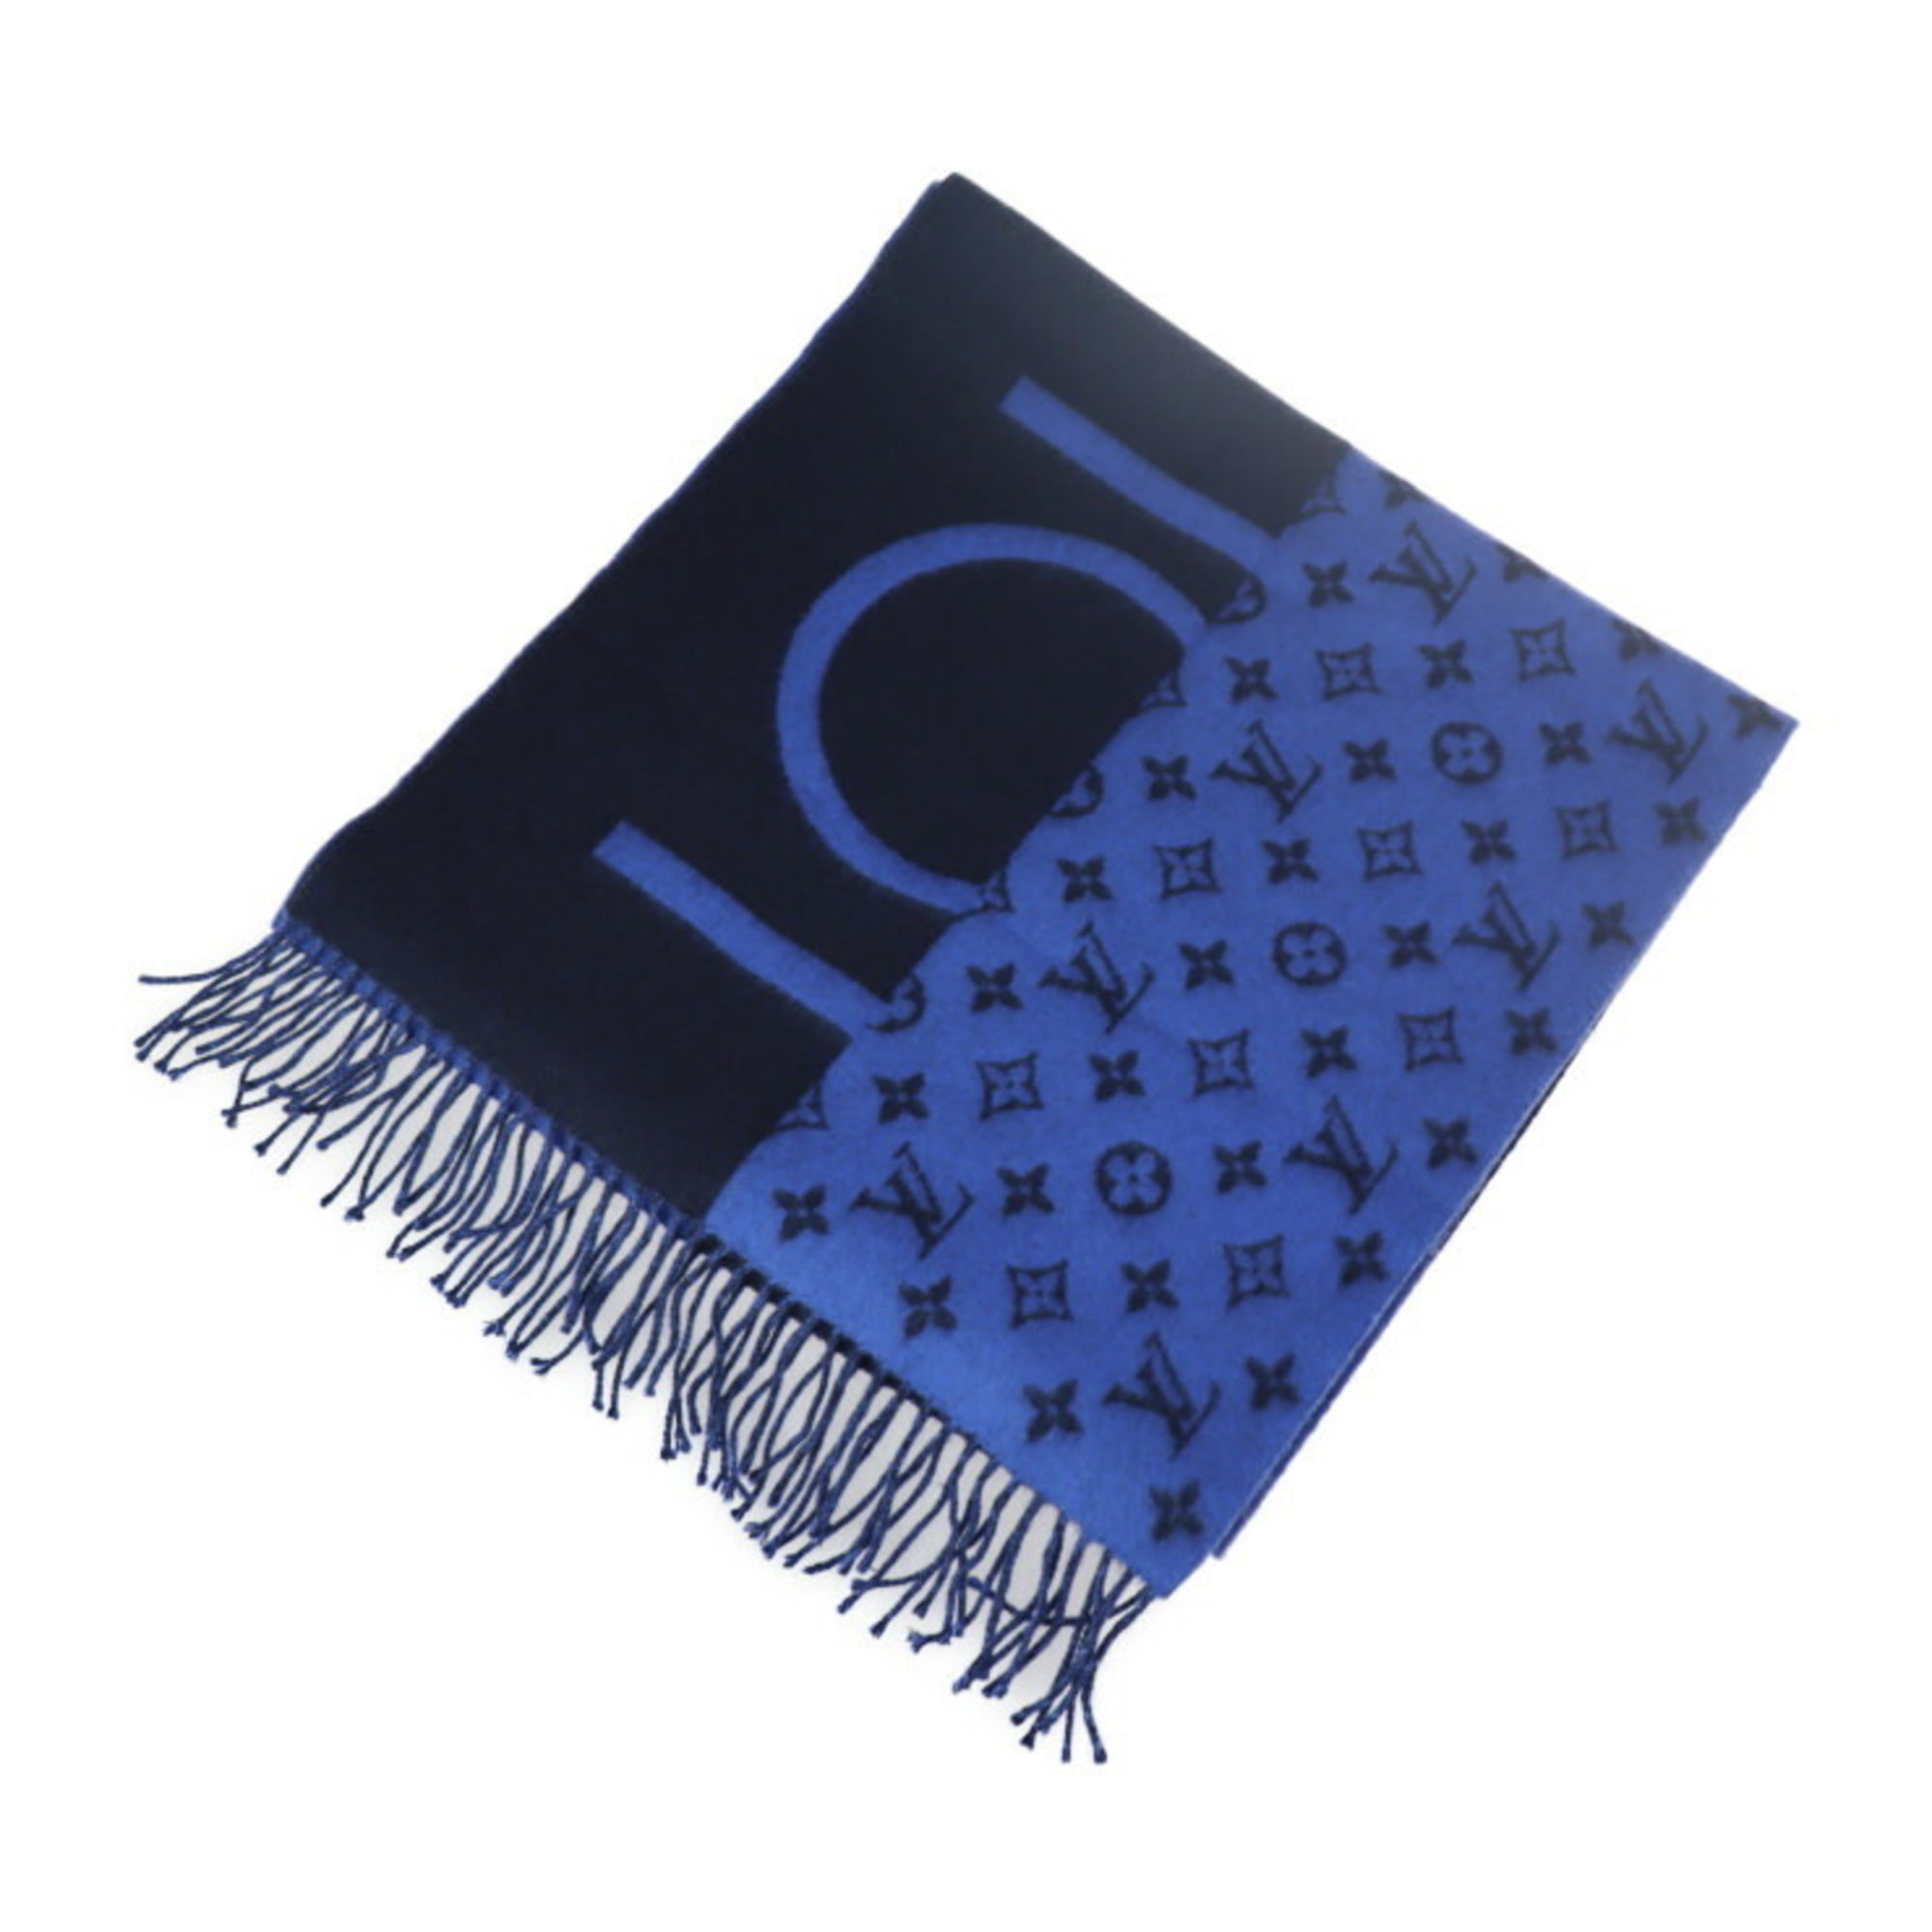 Louis Vuitton Monogram Split Scarf Black 100% Cashmere AUTHENTIC